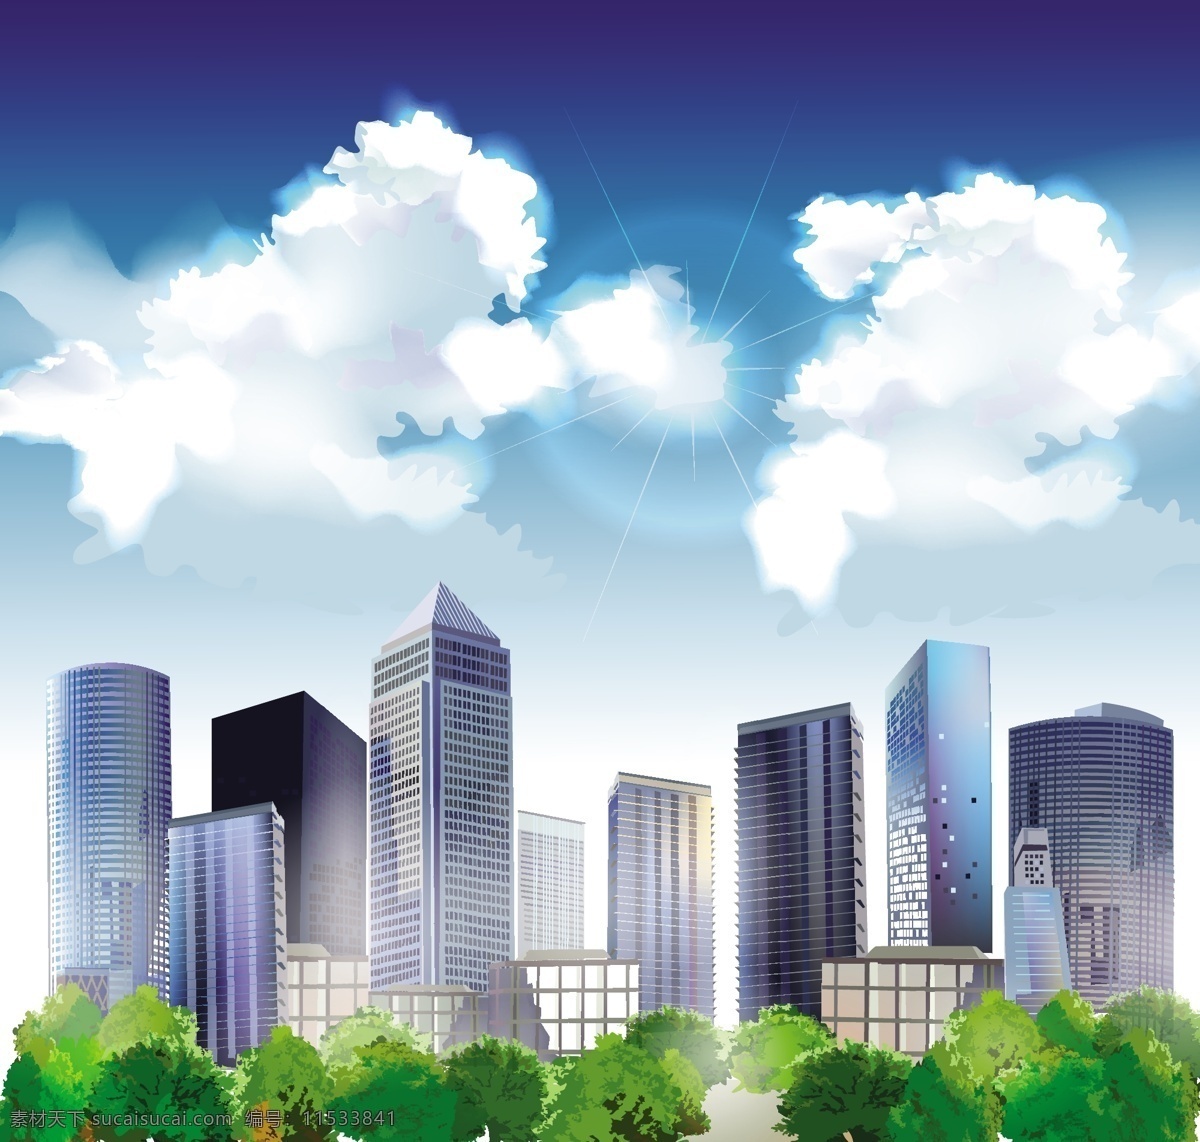 现代 城市 插图 矢量 图 城市插图 都市 高楼大厦 蓝天白云 矢量素材 树丛 现代建筑 矢量图 建筑家居